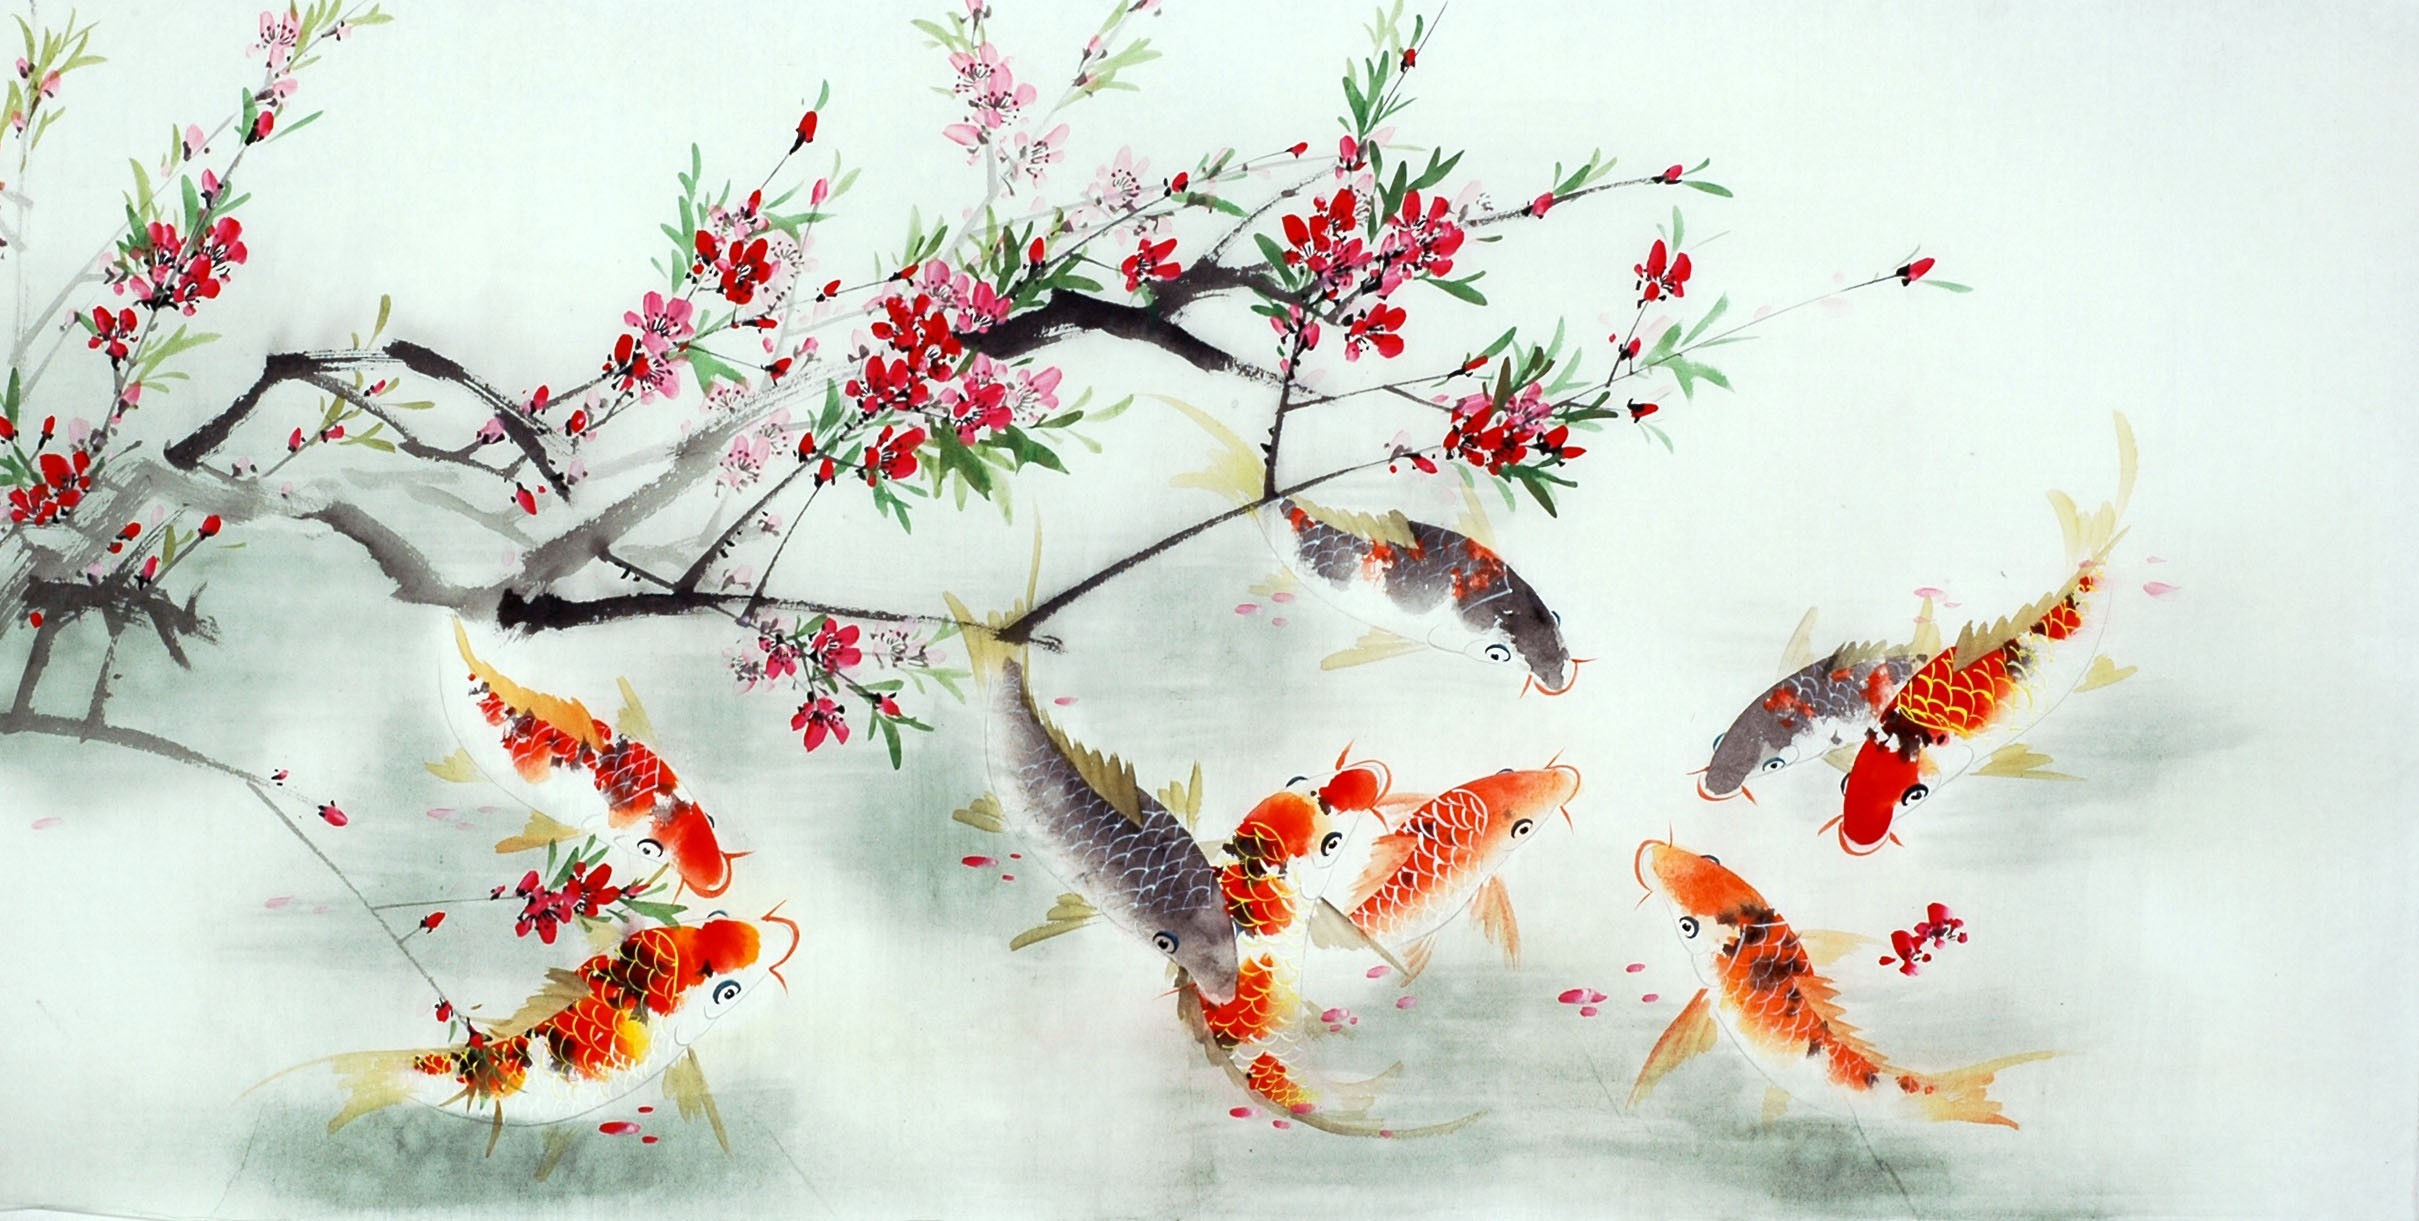 Chinese Carp Painting - CNAG011401